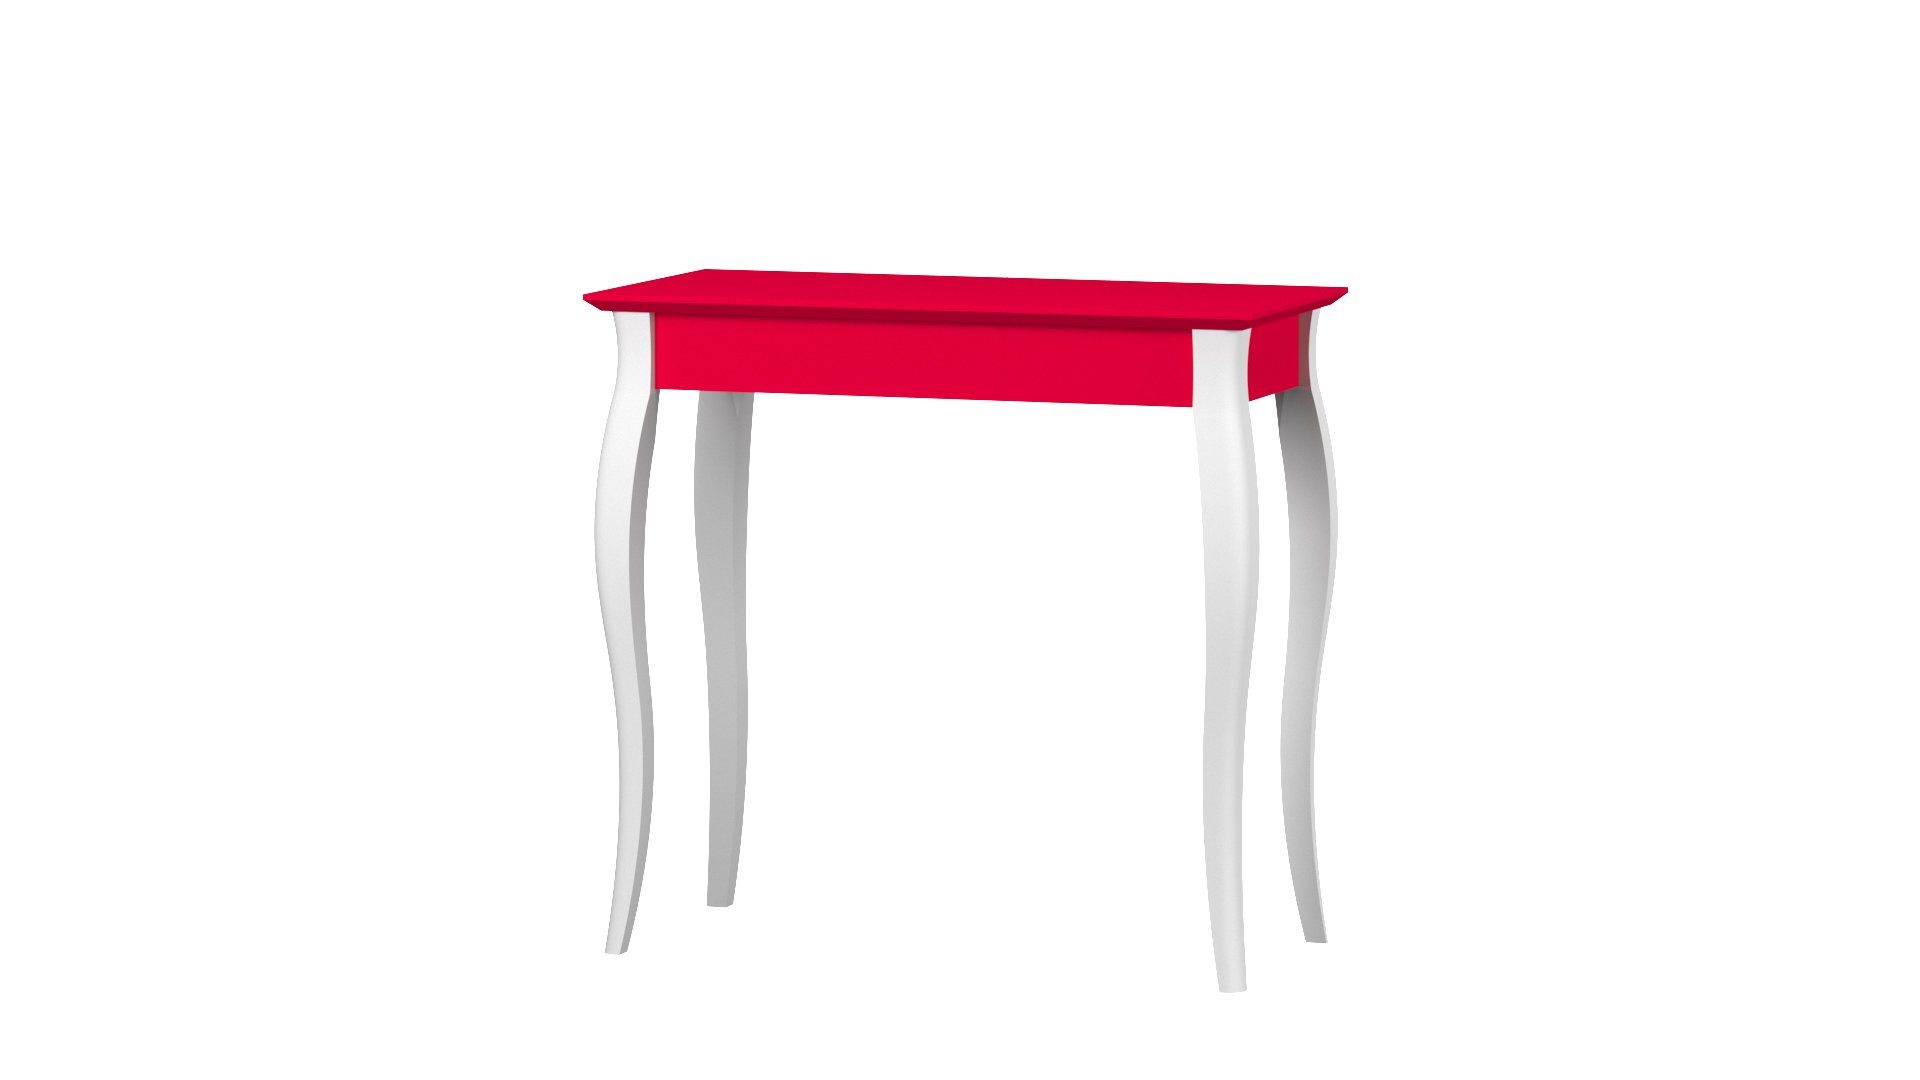 Siblo Schreibtisch Kinderschreibtisch Niklas - Bunter Schreibtisch (Kinderschreibtisch Niklas ohne Schublade) Rot